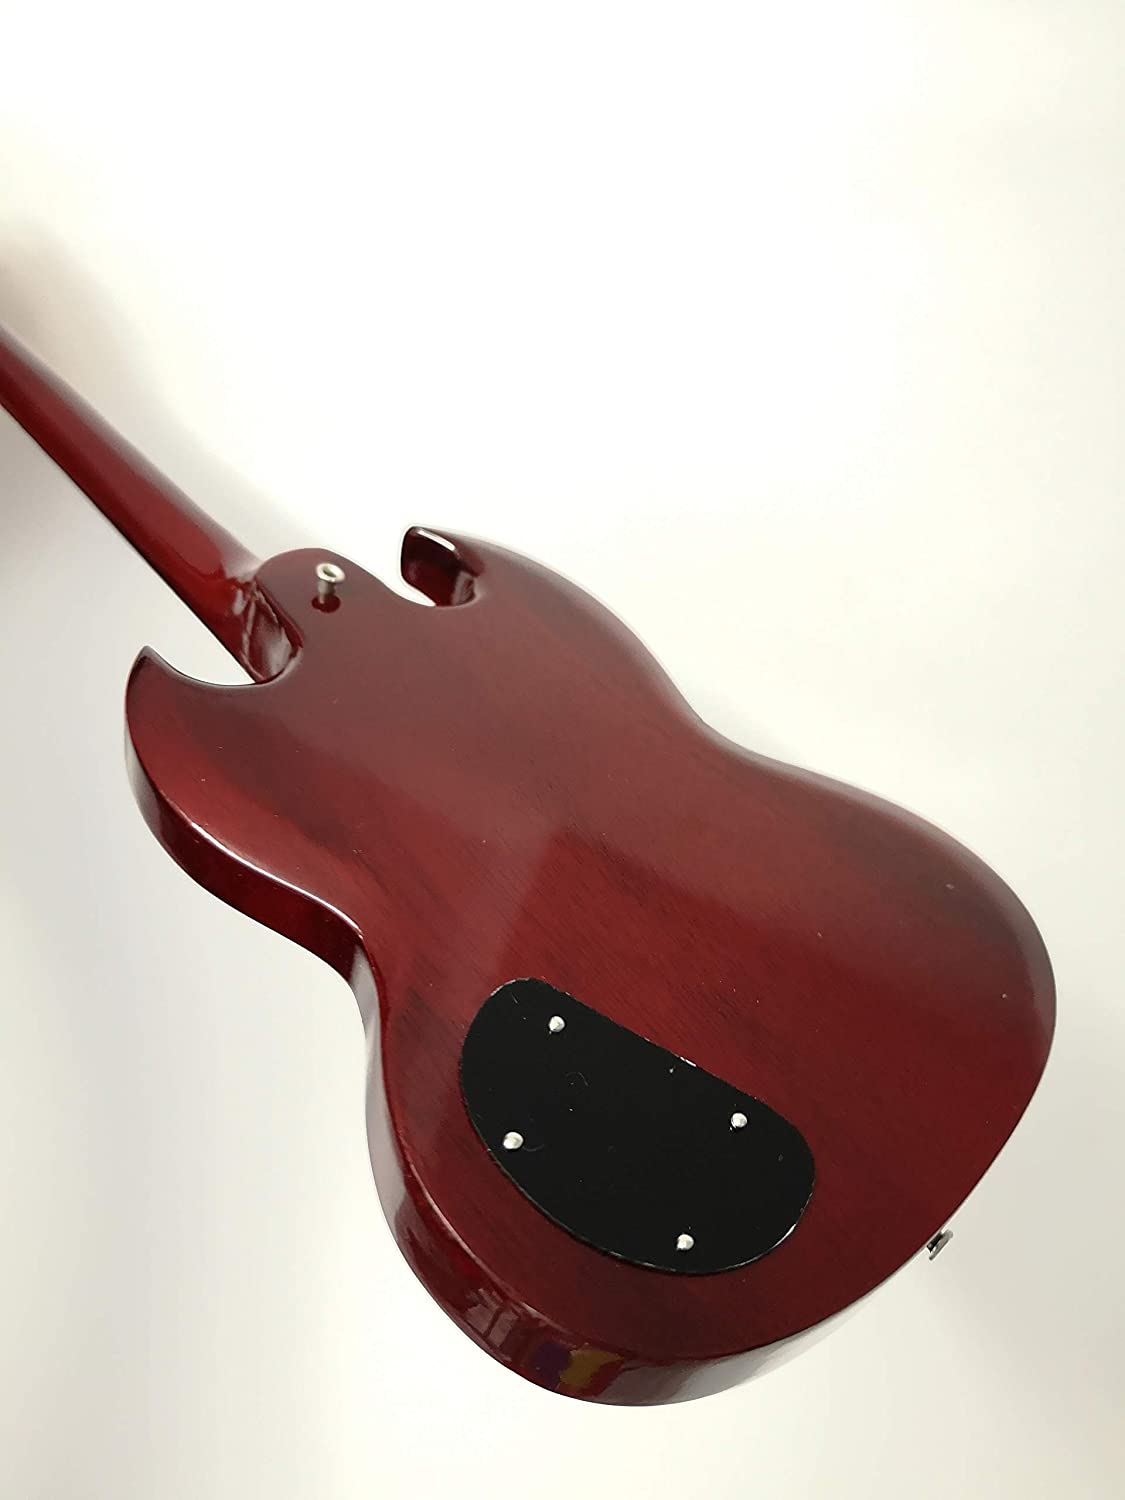 Lynyrd Skynyrd Gary Rossington Miniature Guitar Replica with Display Box 